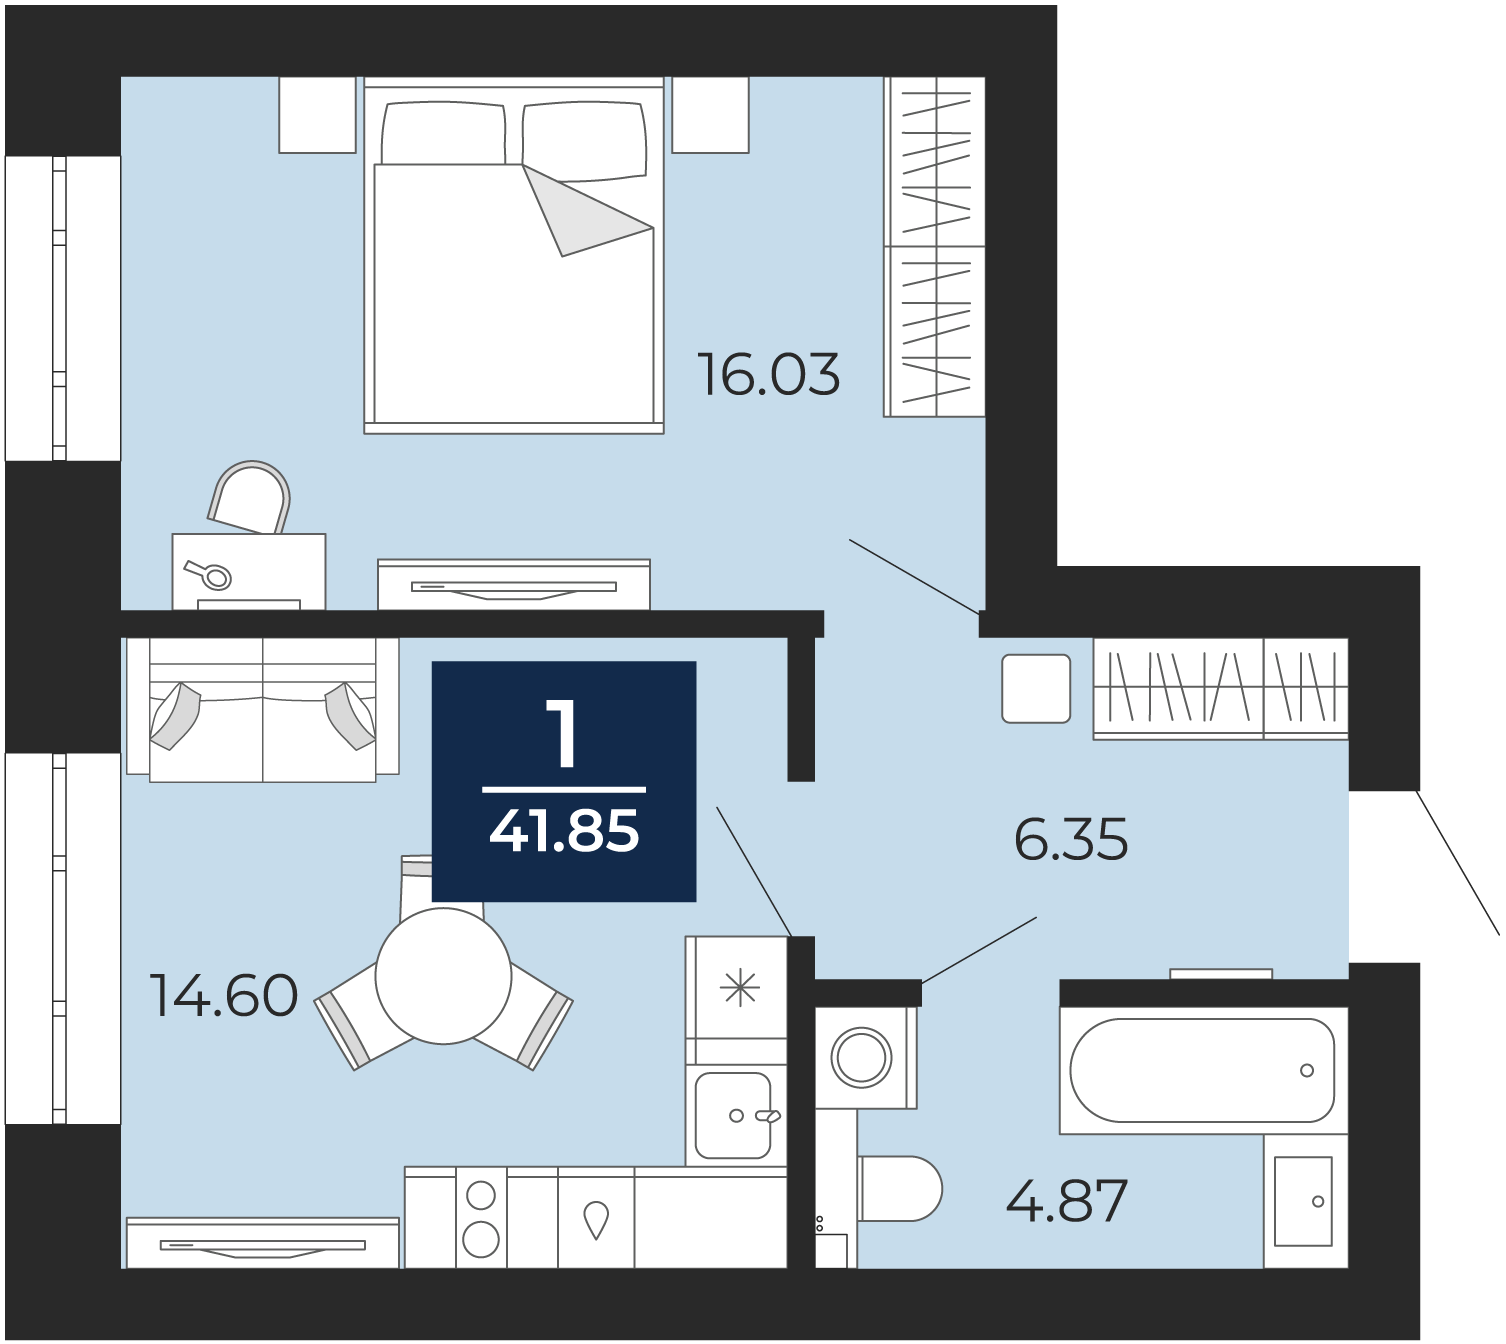 Квартира № 54, 1-комнатная, 41.85 кв. м, 2 этаж